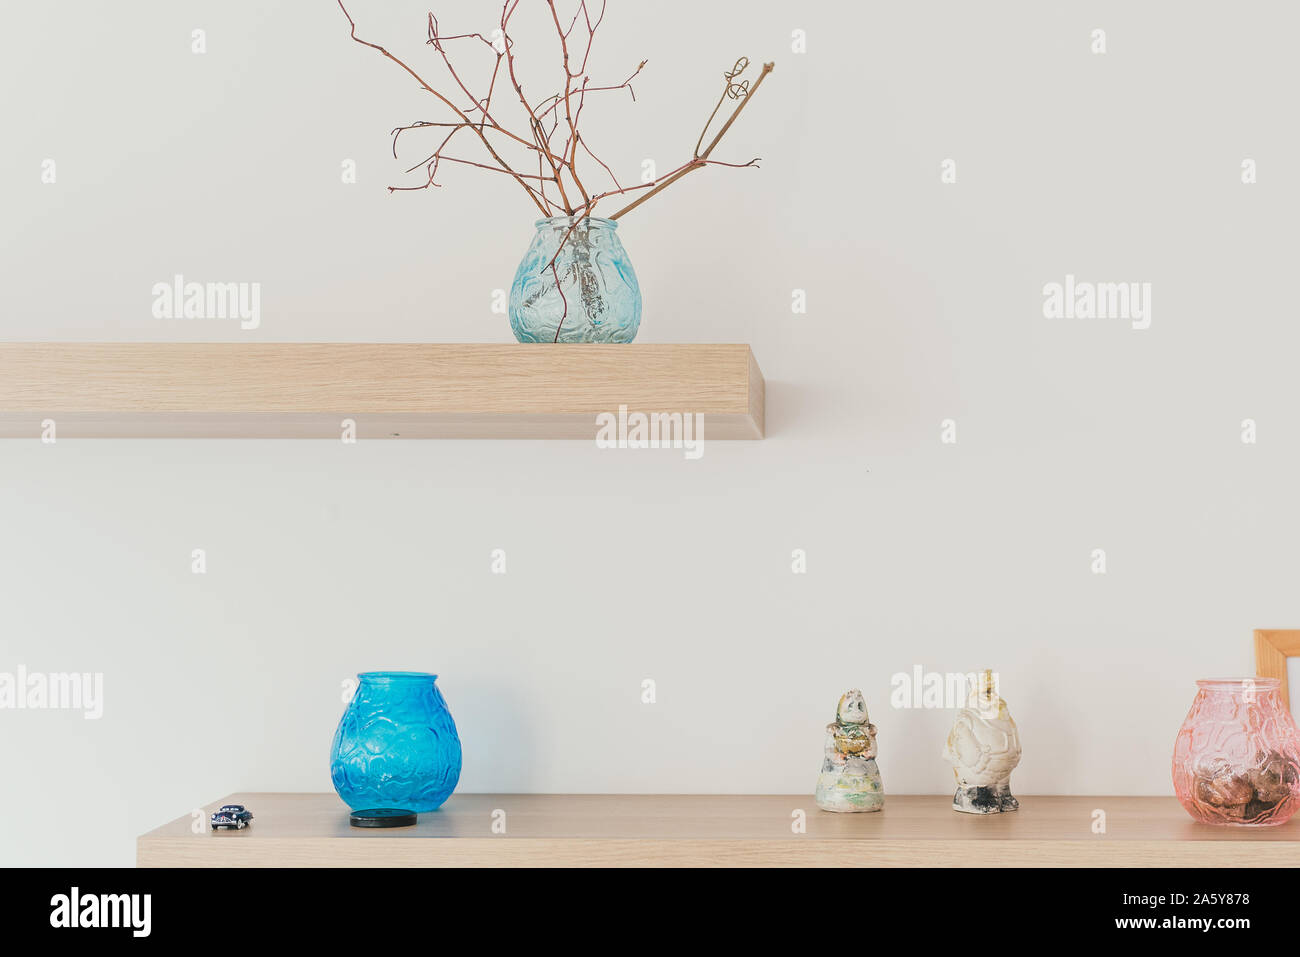 Durée de lumière sur le mur avec décor. Une branche dans un vase. Le minimalisme scandinave dans l'intérieur Banque D'Images